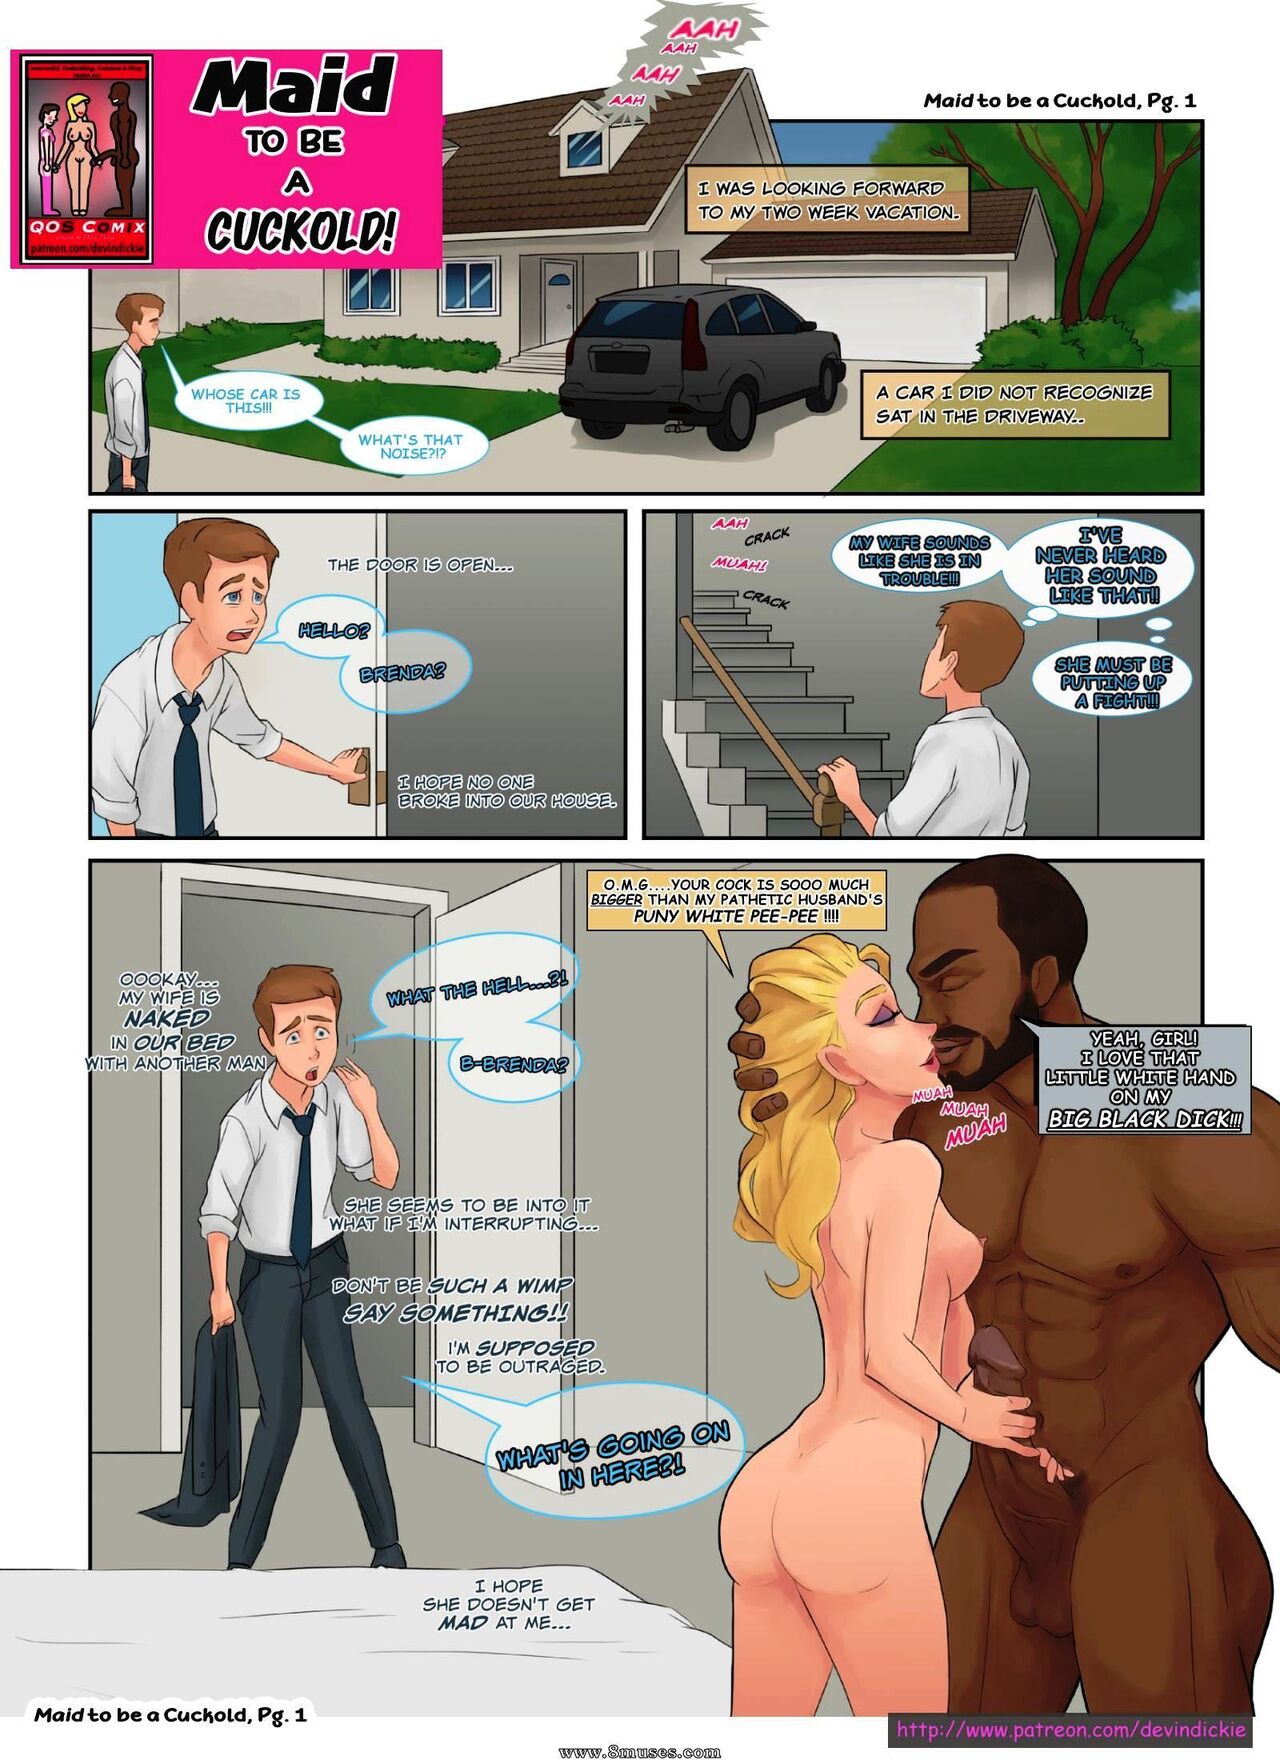 Cuckhold porn comics